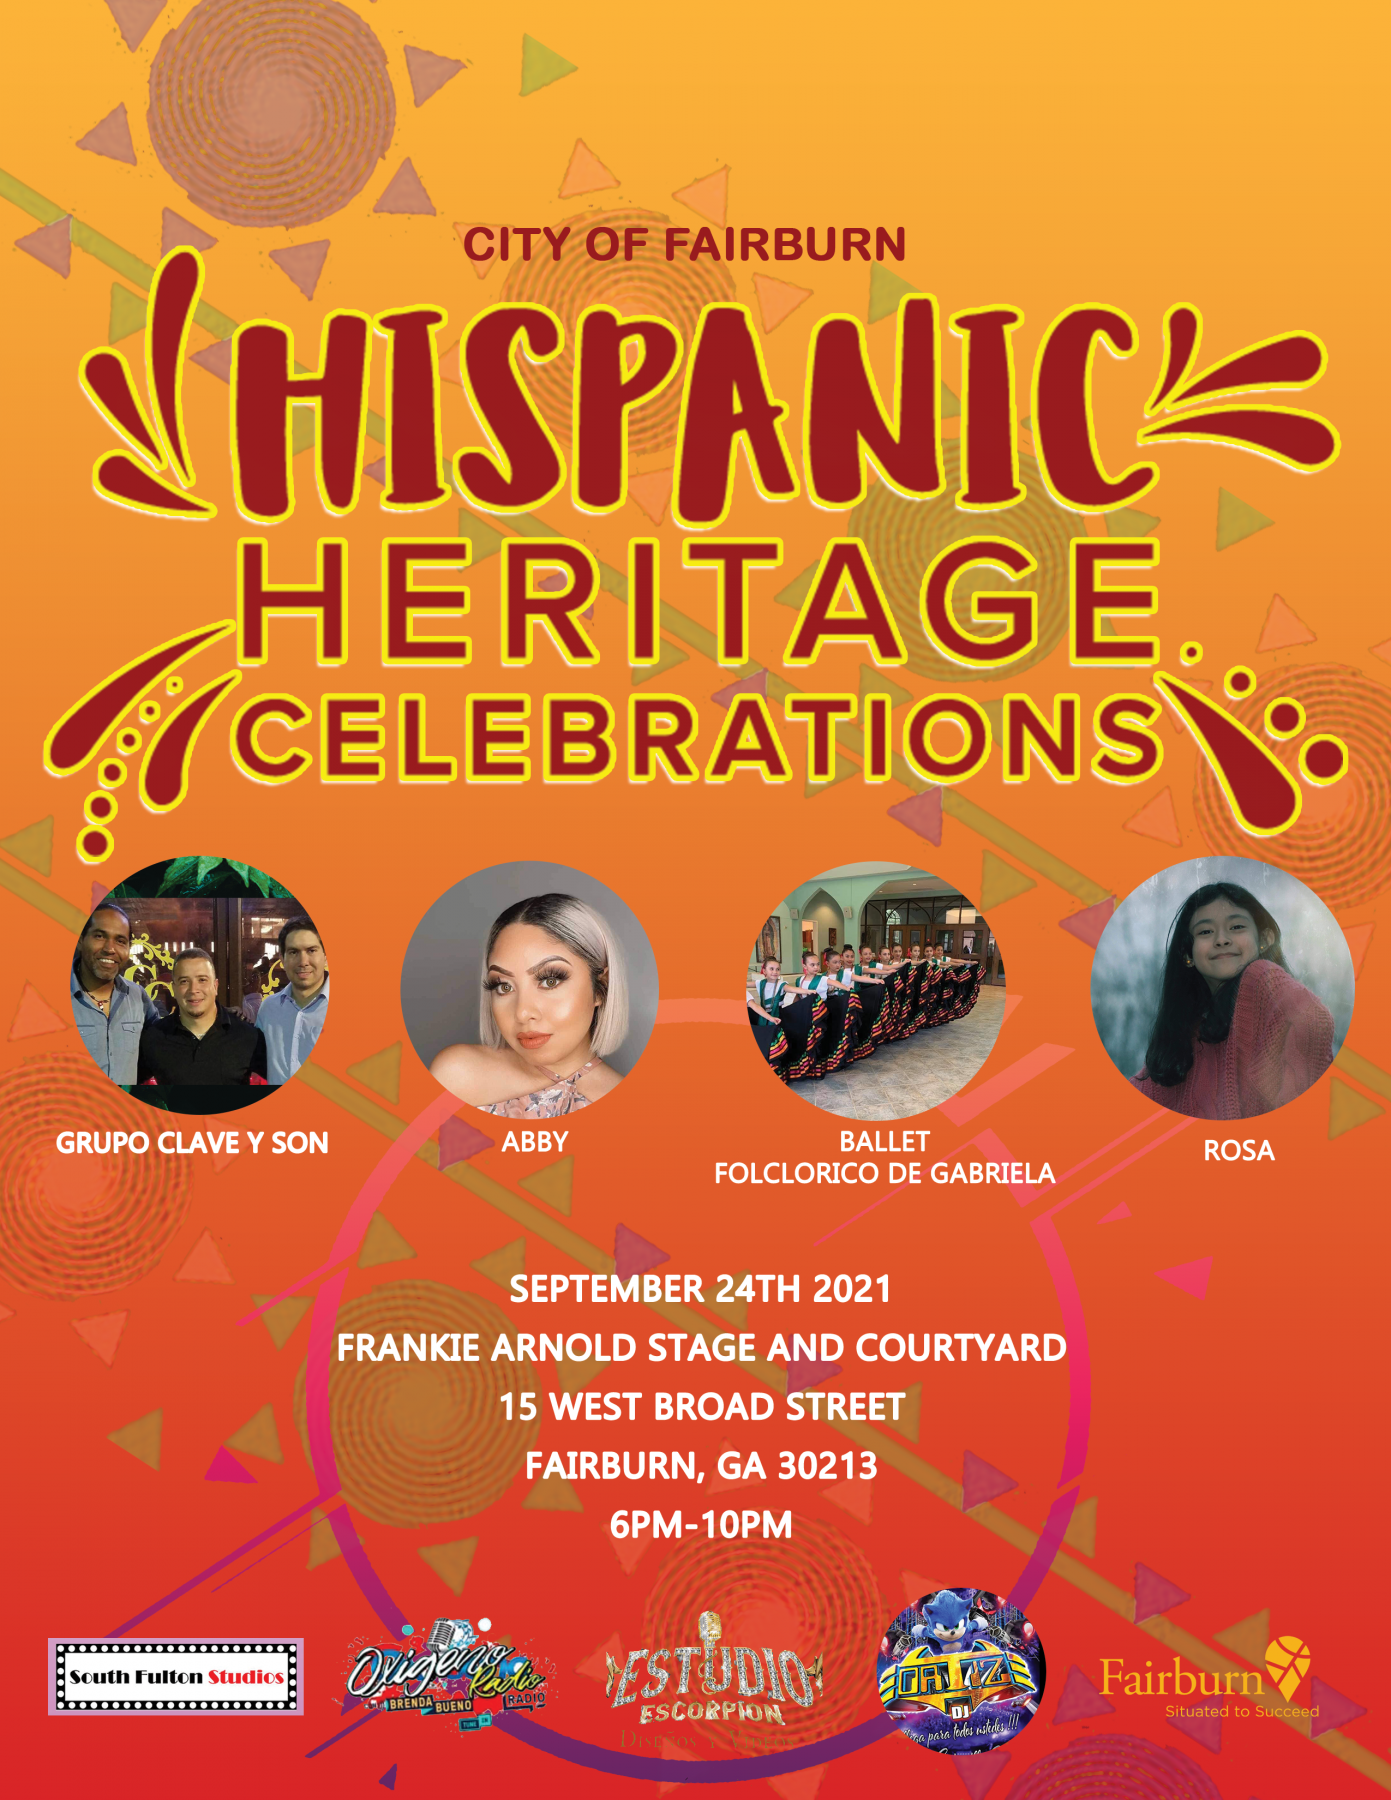 Hispanic Heritage Celebration